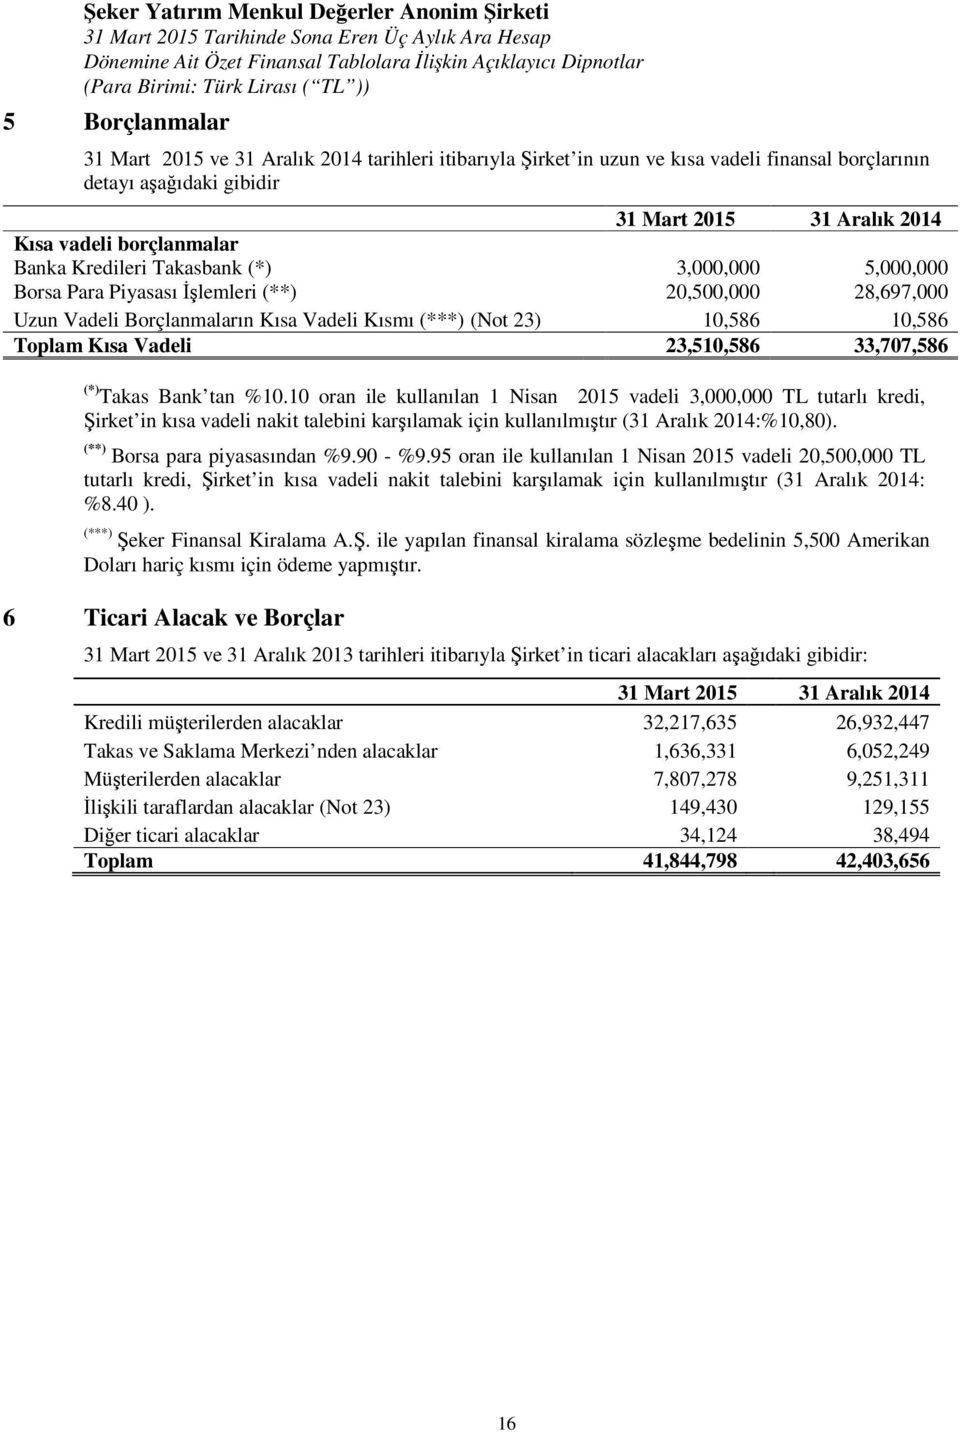 Takas Bank tan %10.10 oran ile kullanılan 1 Nisan 2015 vadeli 3,000,000 TL tutarlı kredi, Şirket in kısa vadeli nakit talebini karşılamak için kullanılmıştır (31 Aralık 2014:%10,80).